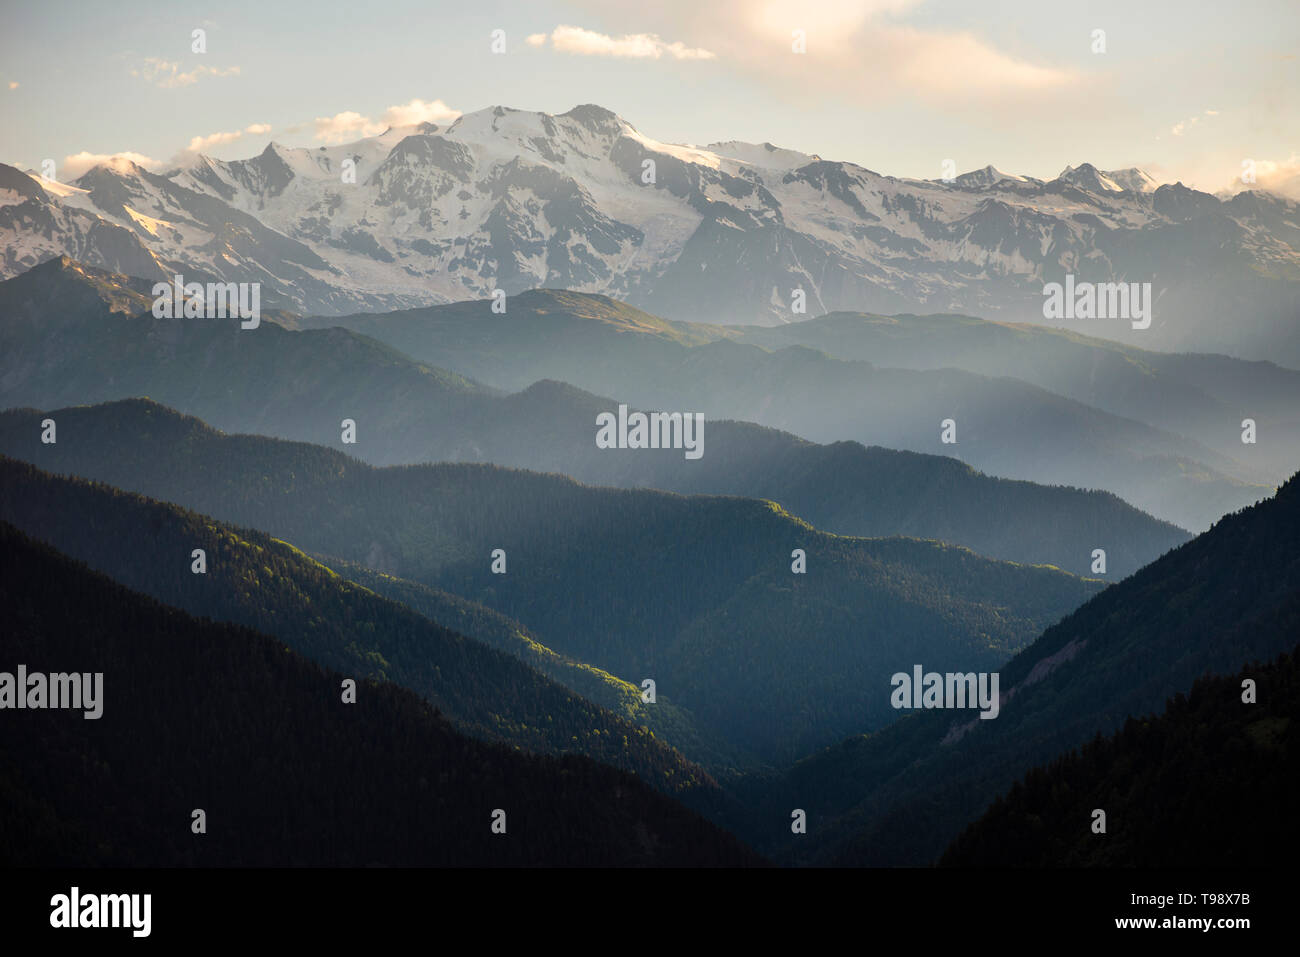 Les crêtes des montagnes boisées du Grand Caucase, dans la lumière oblique, en haut Swanetia, Géorgie Banque D'Images